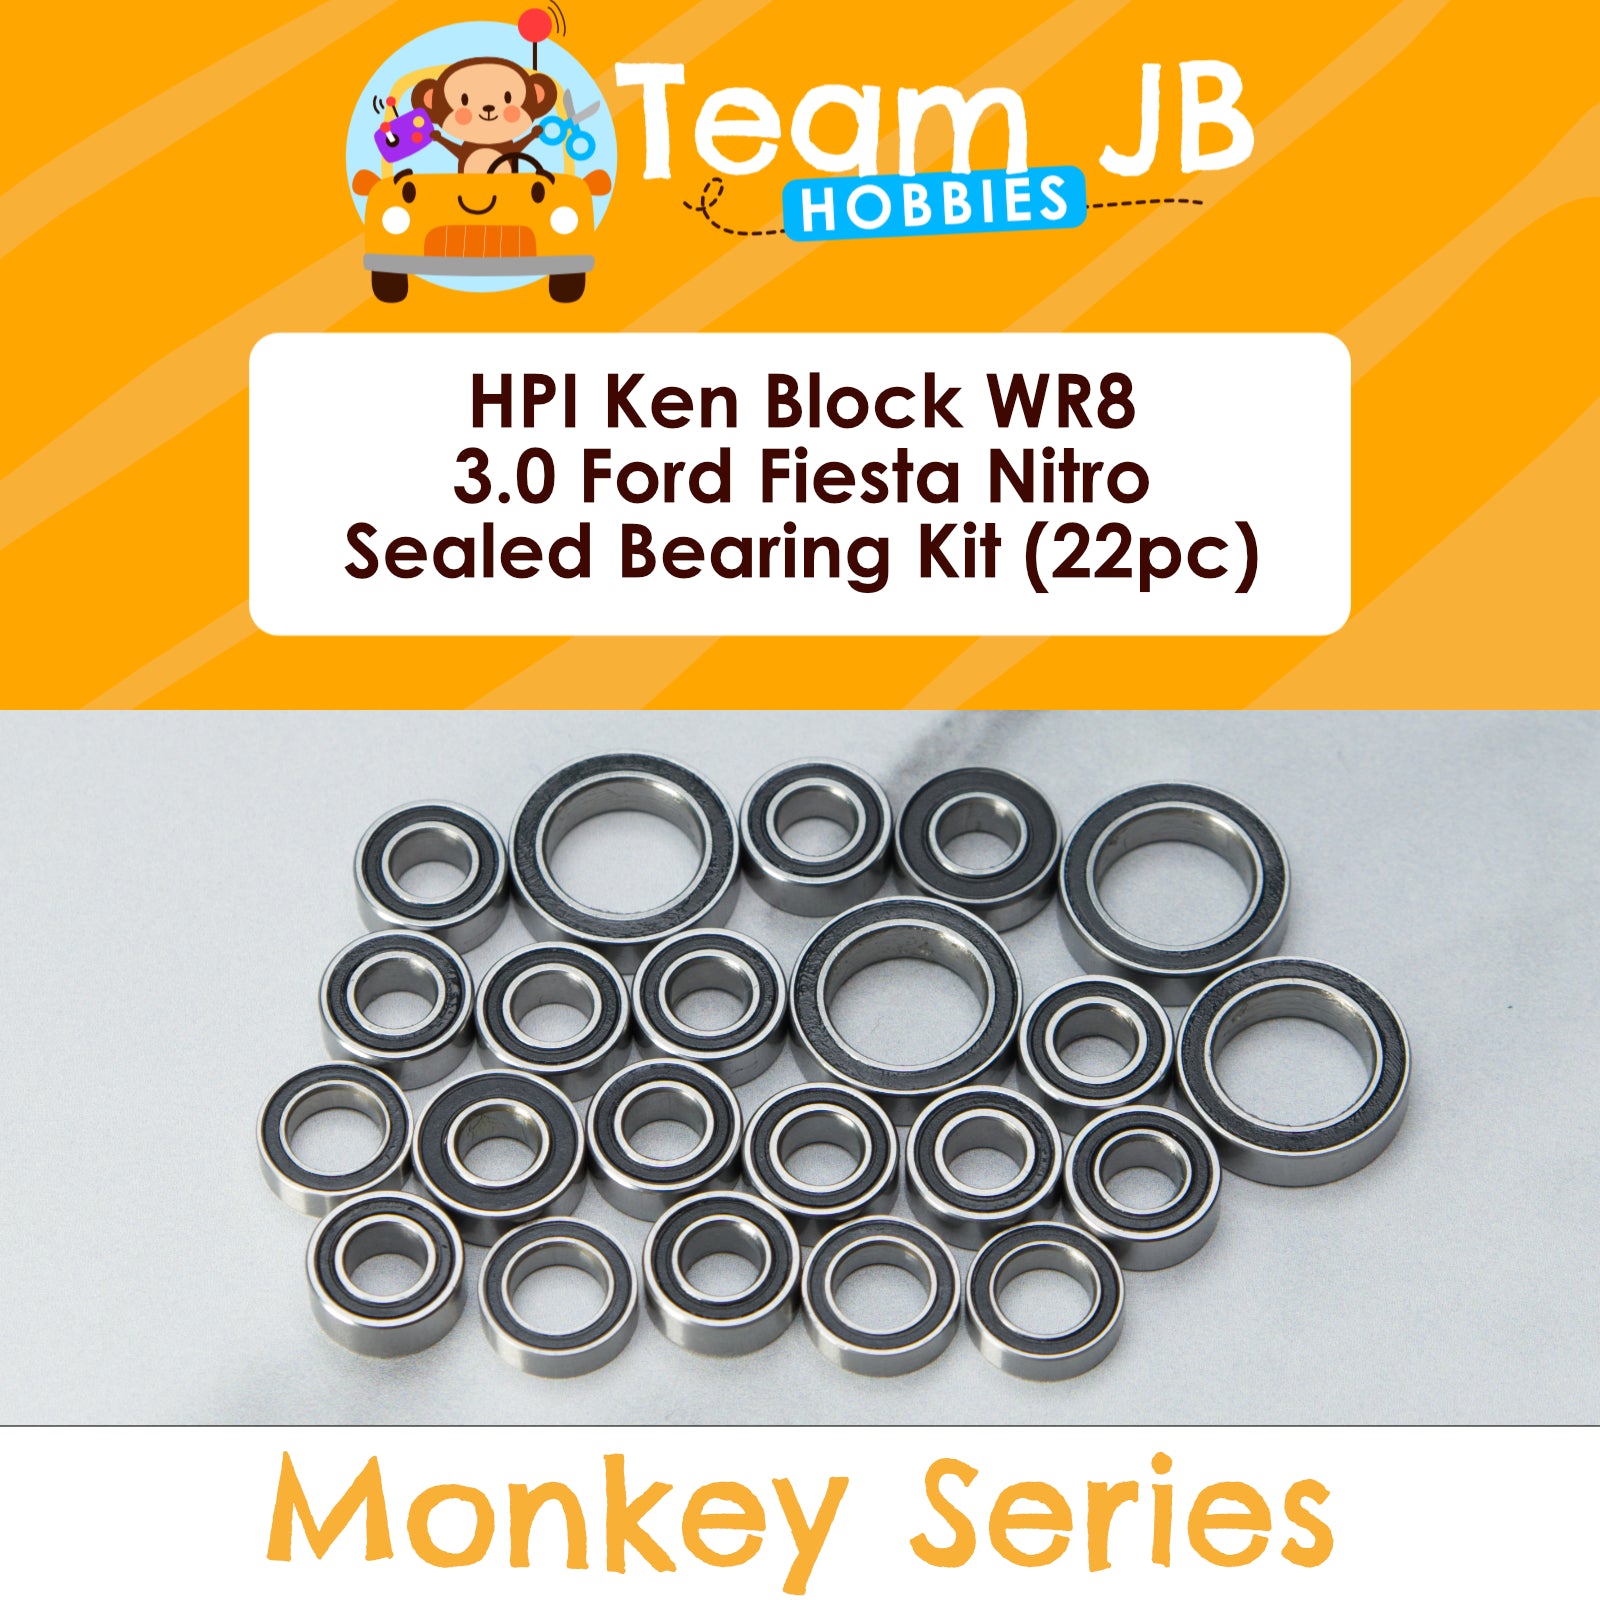 HPI Ken Block WR8 3.0 Ford Fiesta Nitro - Sealed Bearing Kit